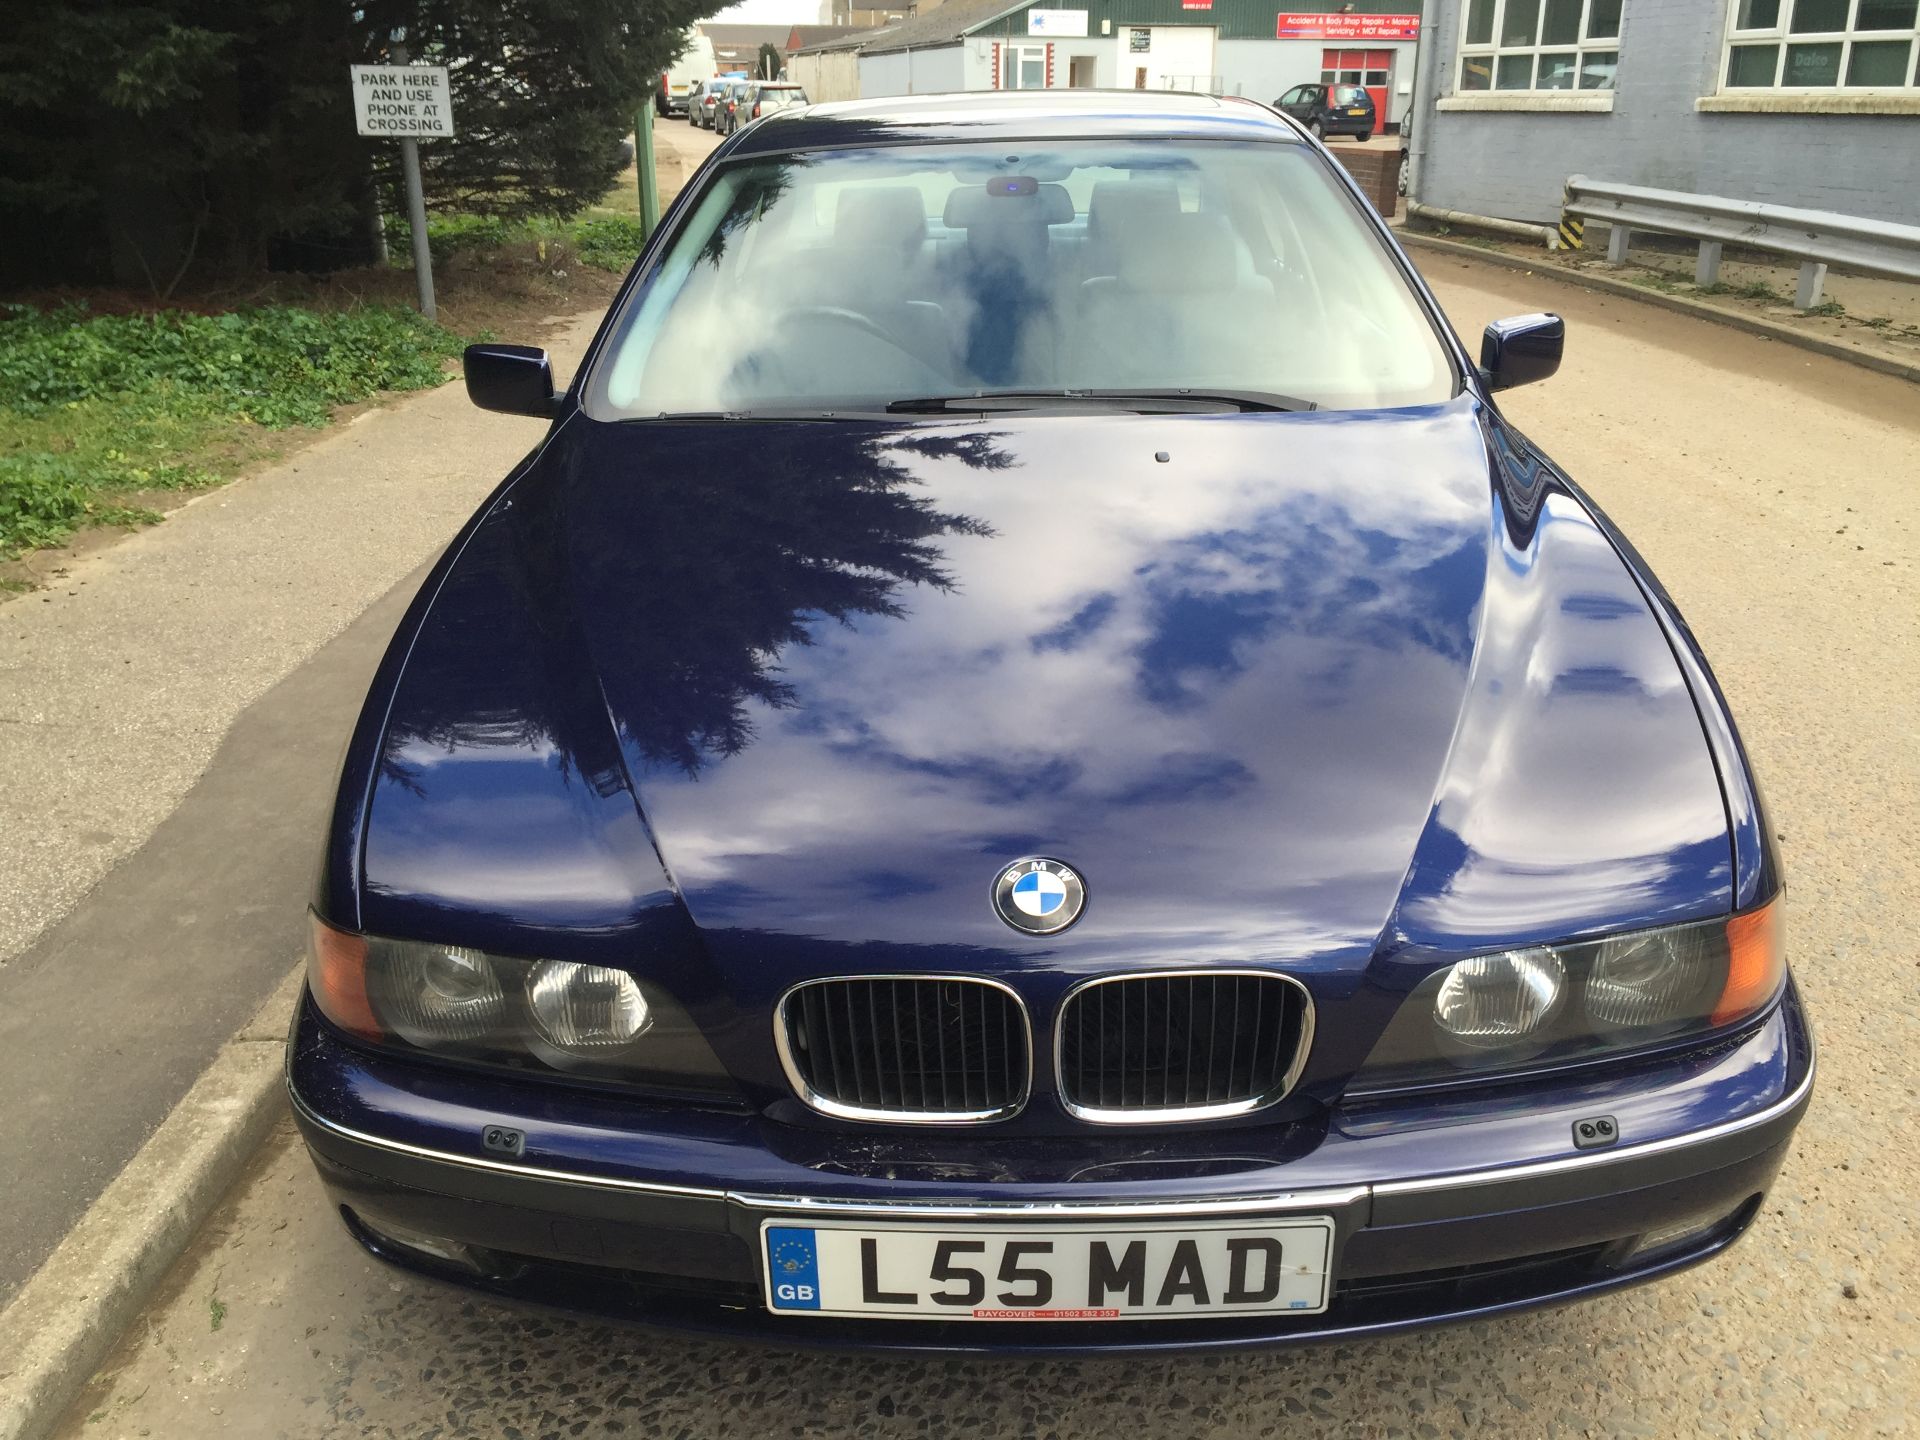 1997 BMW 528i SE - Image 3 of 11